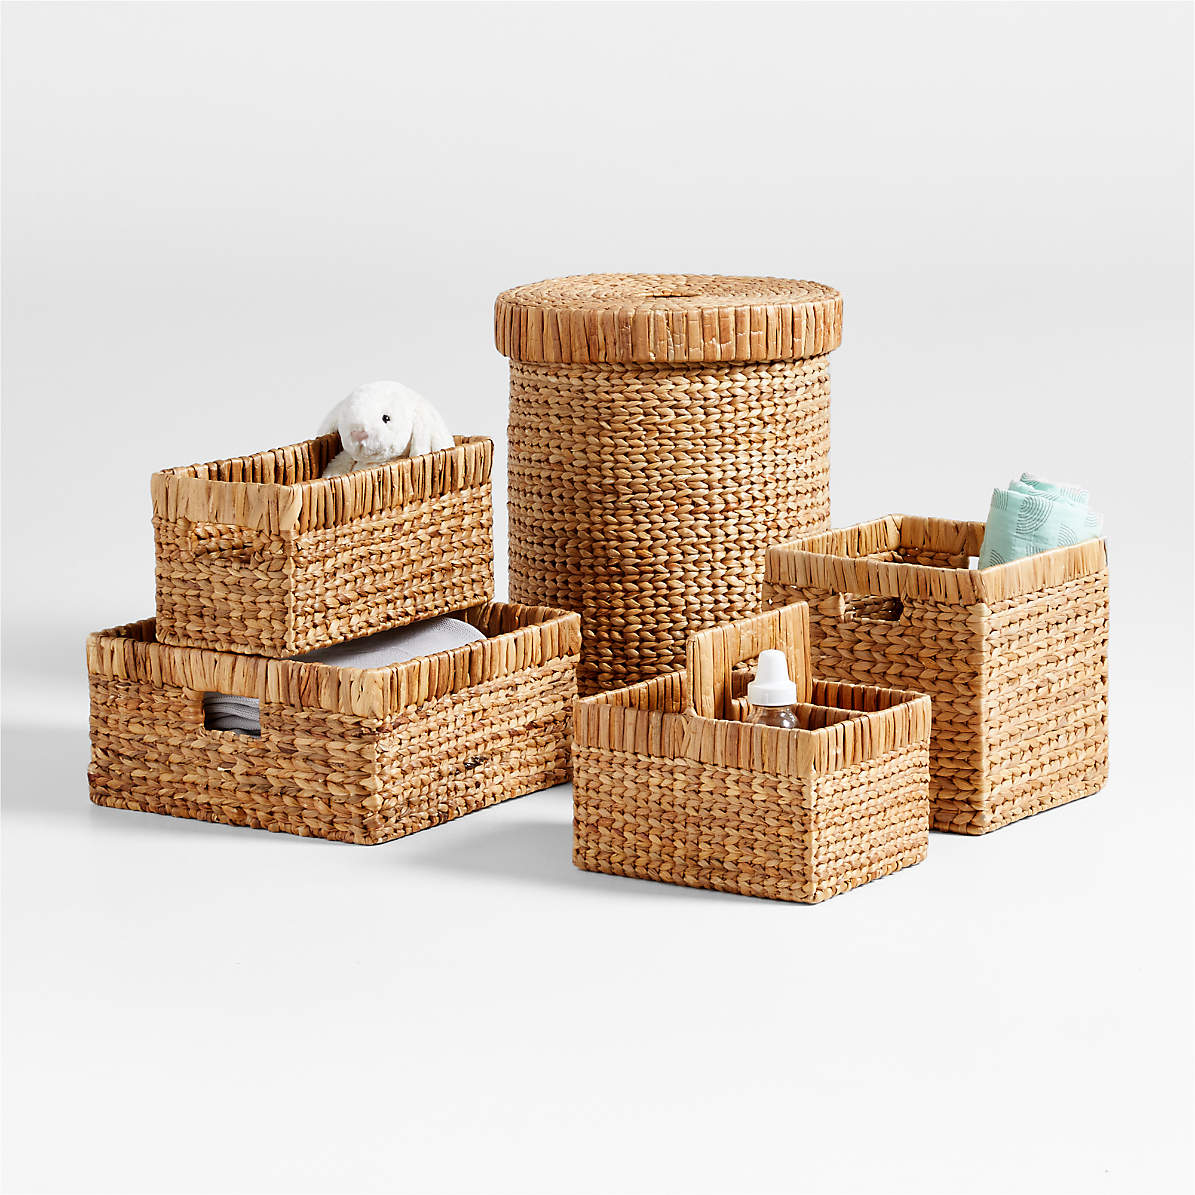 3pcs/set Natural Wooden Basket Bottom Oval Blank Solid Crochet Basket Wood  Base for DIY Basket